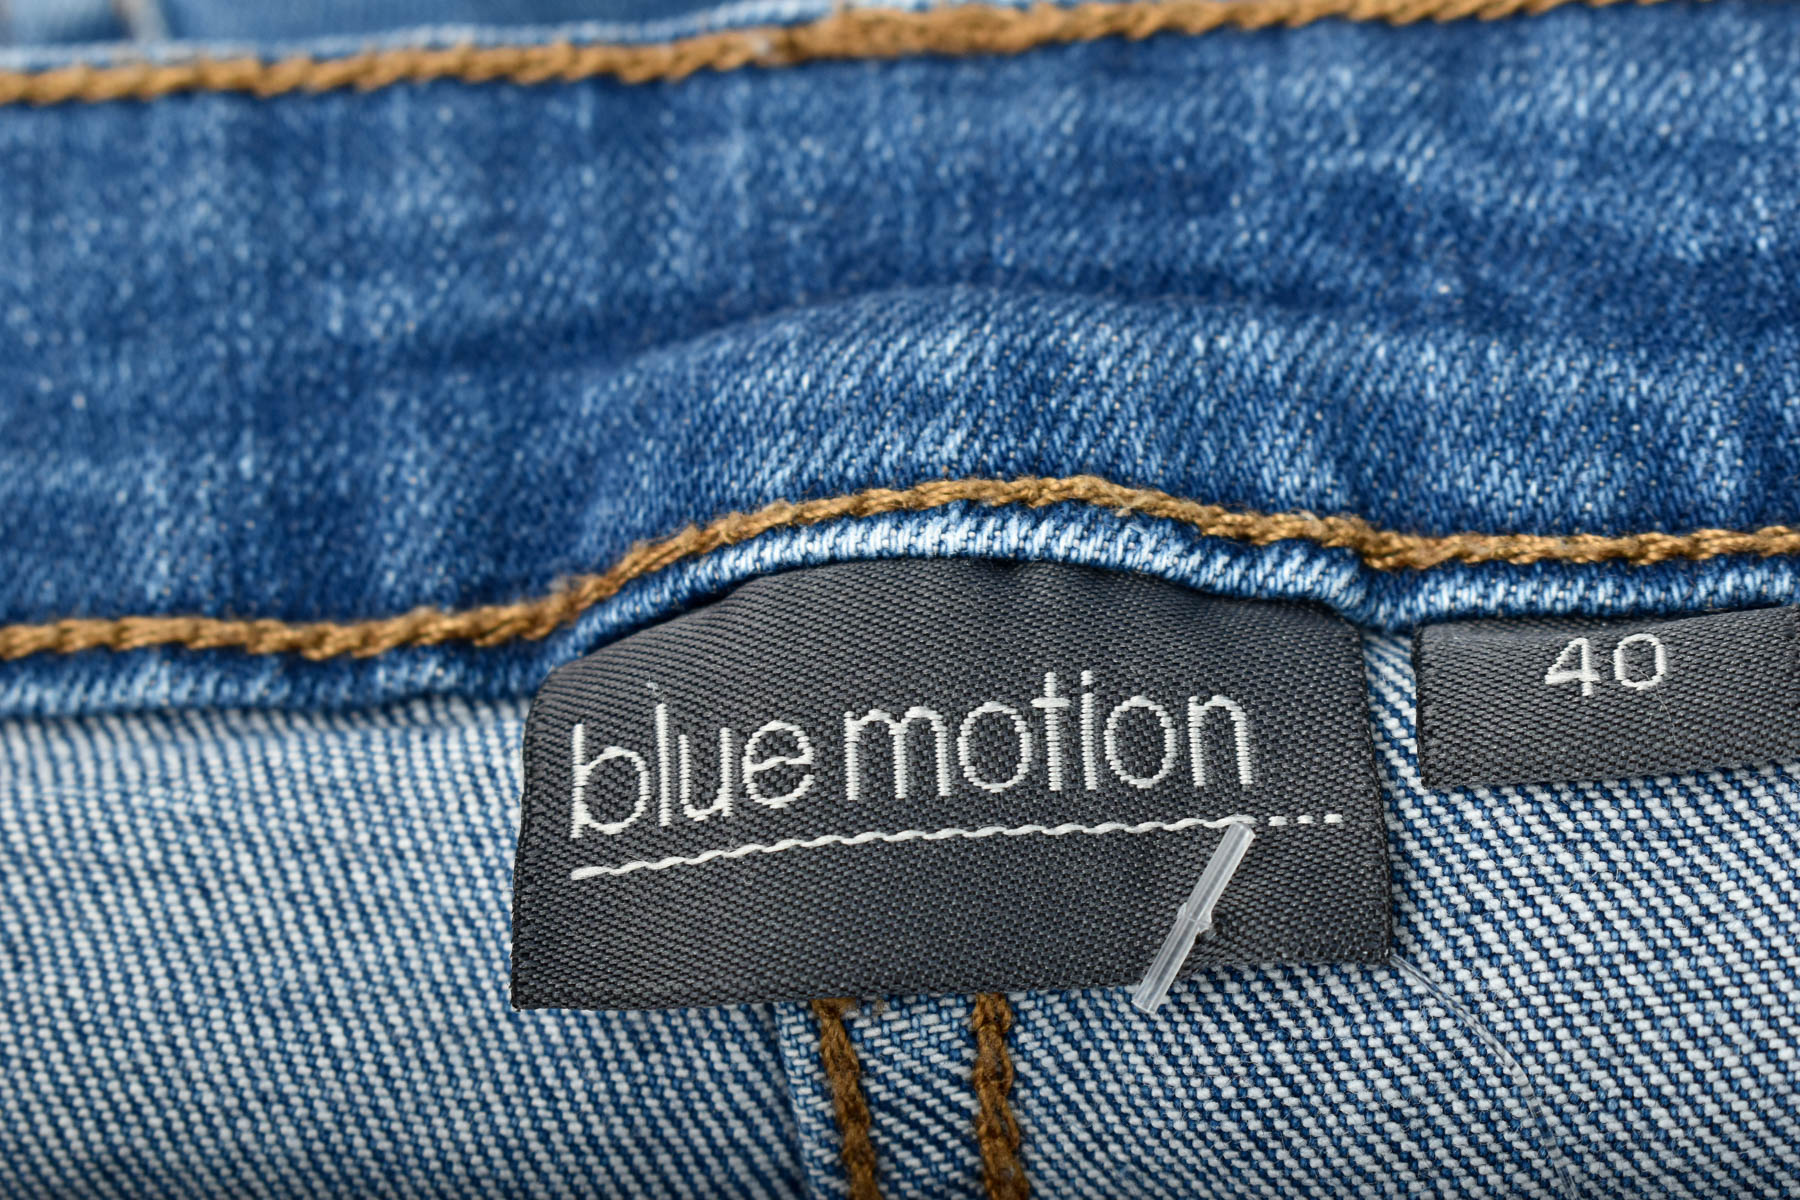 Pantaloni scurți de damă - Blue Motion - 2